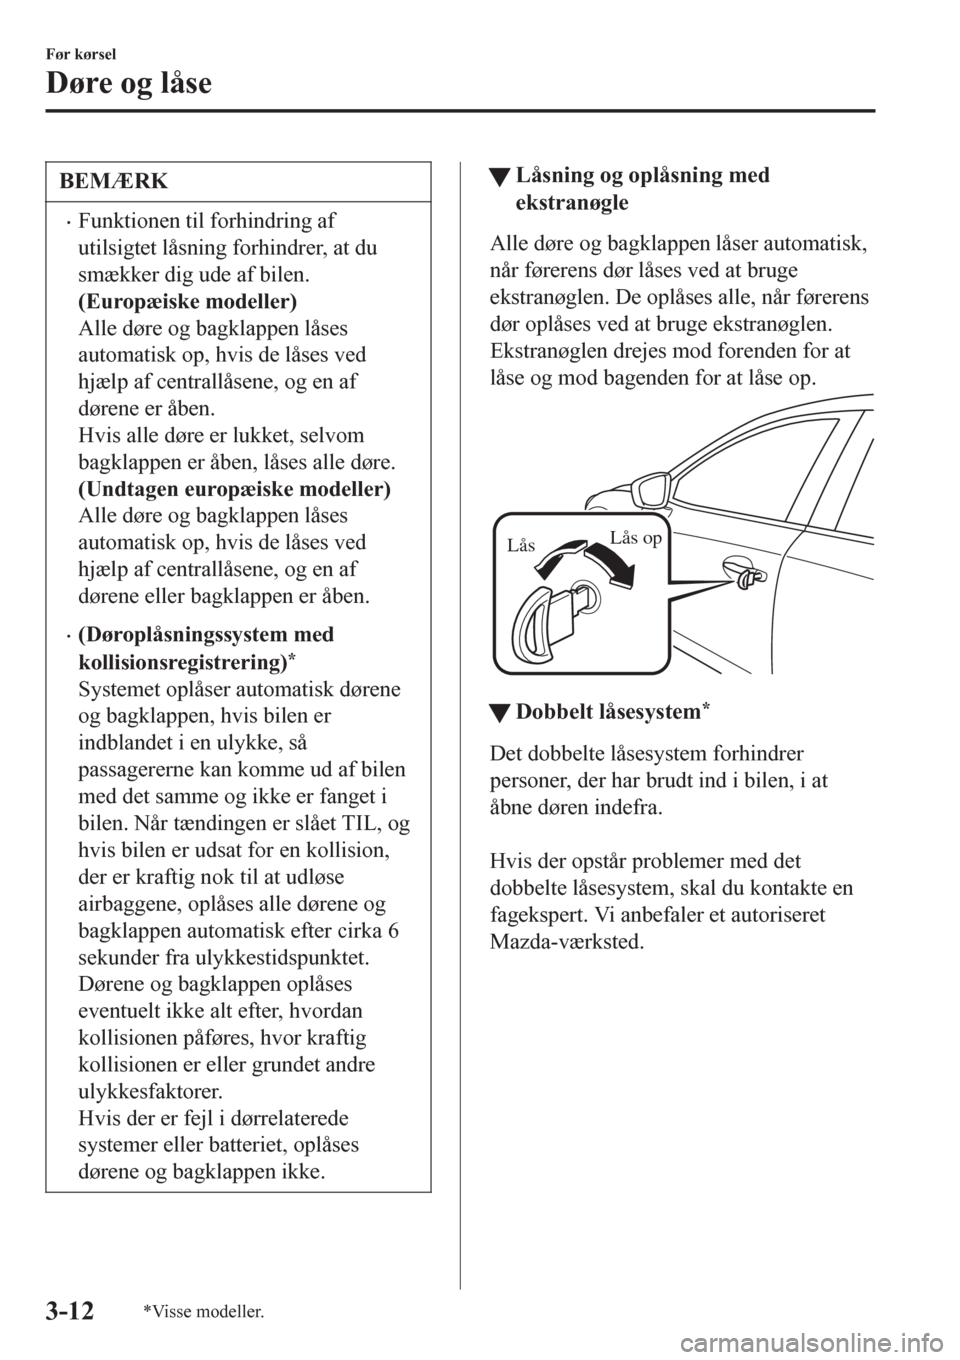 MAZDA MODEL 6 2016  Instruktionsbog (in Danish) BEMÆRK
•Funktionen til forhindring af
utilsigtet låsning forhindrer, at du
smækker dig ude af bilen.
(Europæiske modeller)
Alle døre og bagklappen låses
automatisk op, hvis de låses ved
hjæl